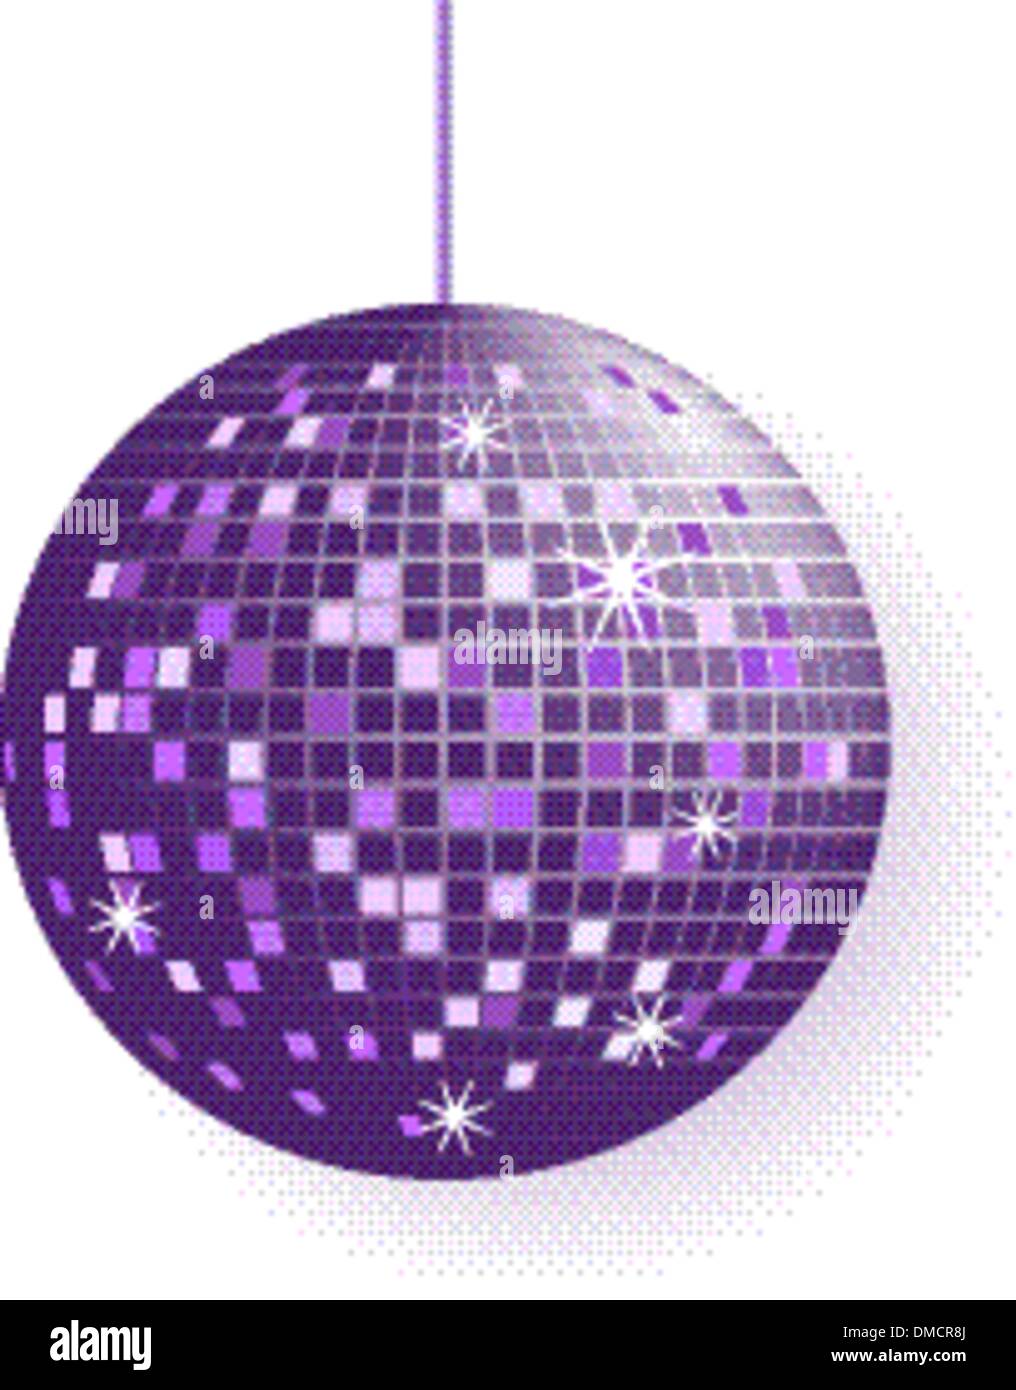 Boule disco dans des tons violet isolated on white Illustration de Vecteur